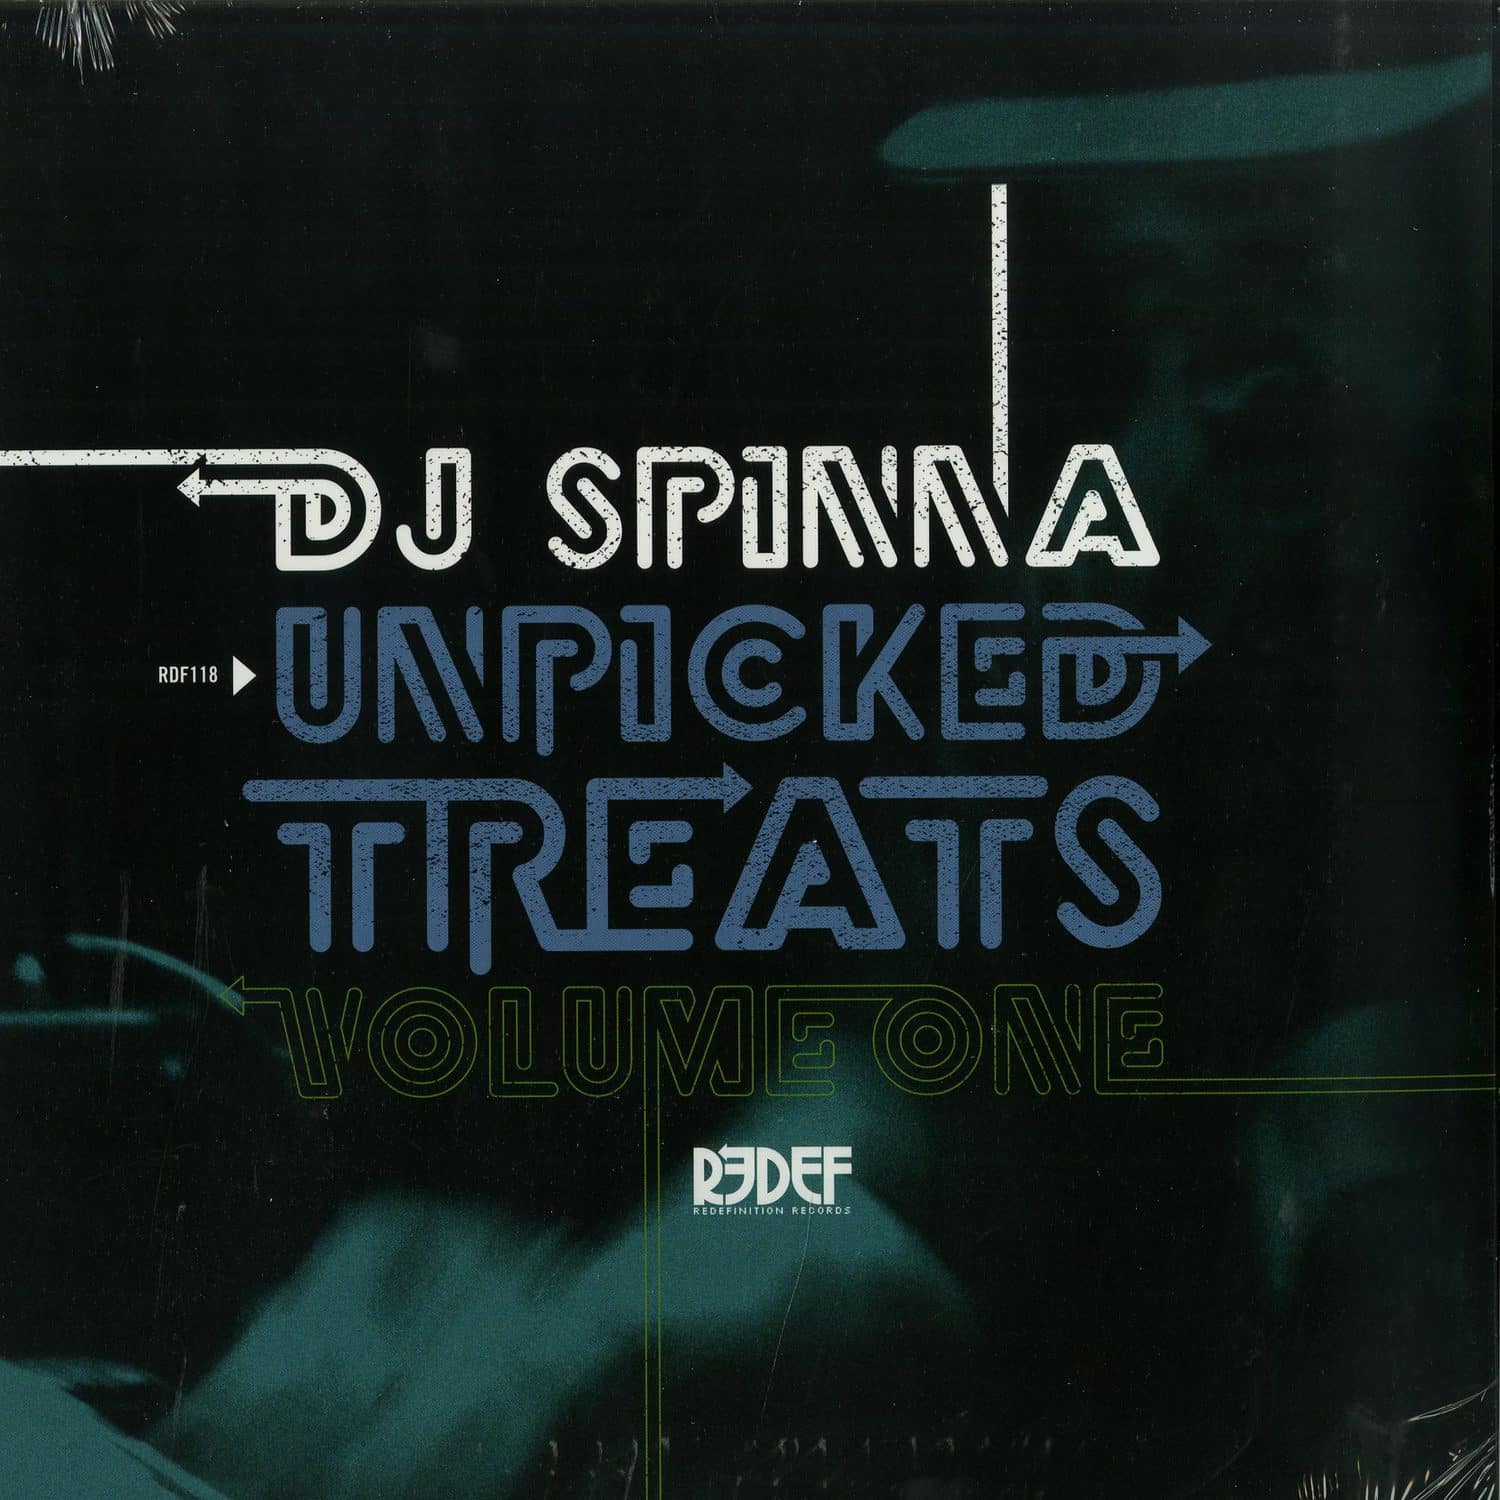 DJ Spinna - UNPICKED TREATS VOL.1 